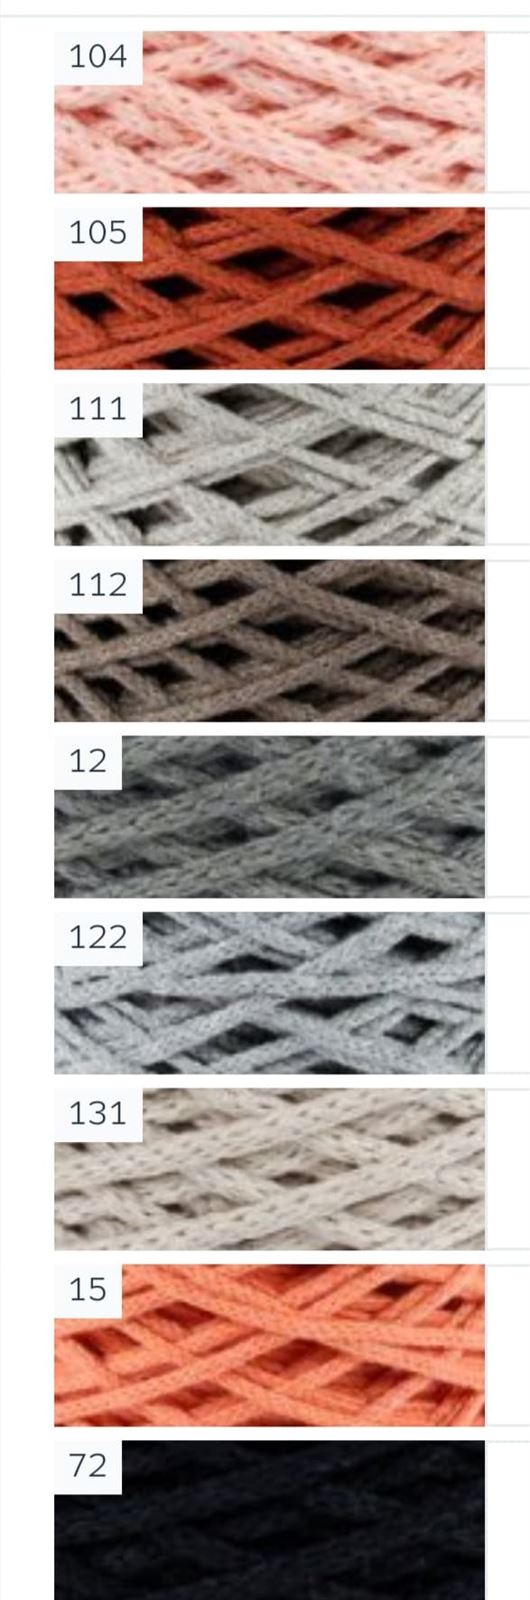 DMC Nova Vita 4 Crochet, Tricot, Macrame - Imagen 3